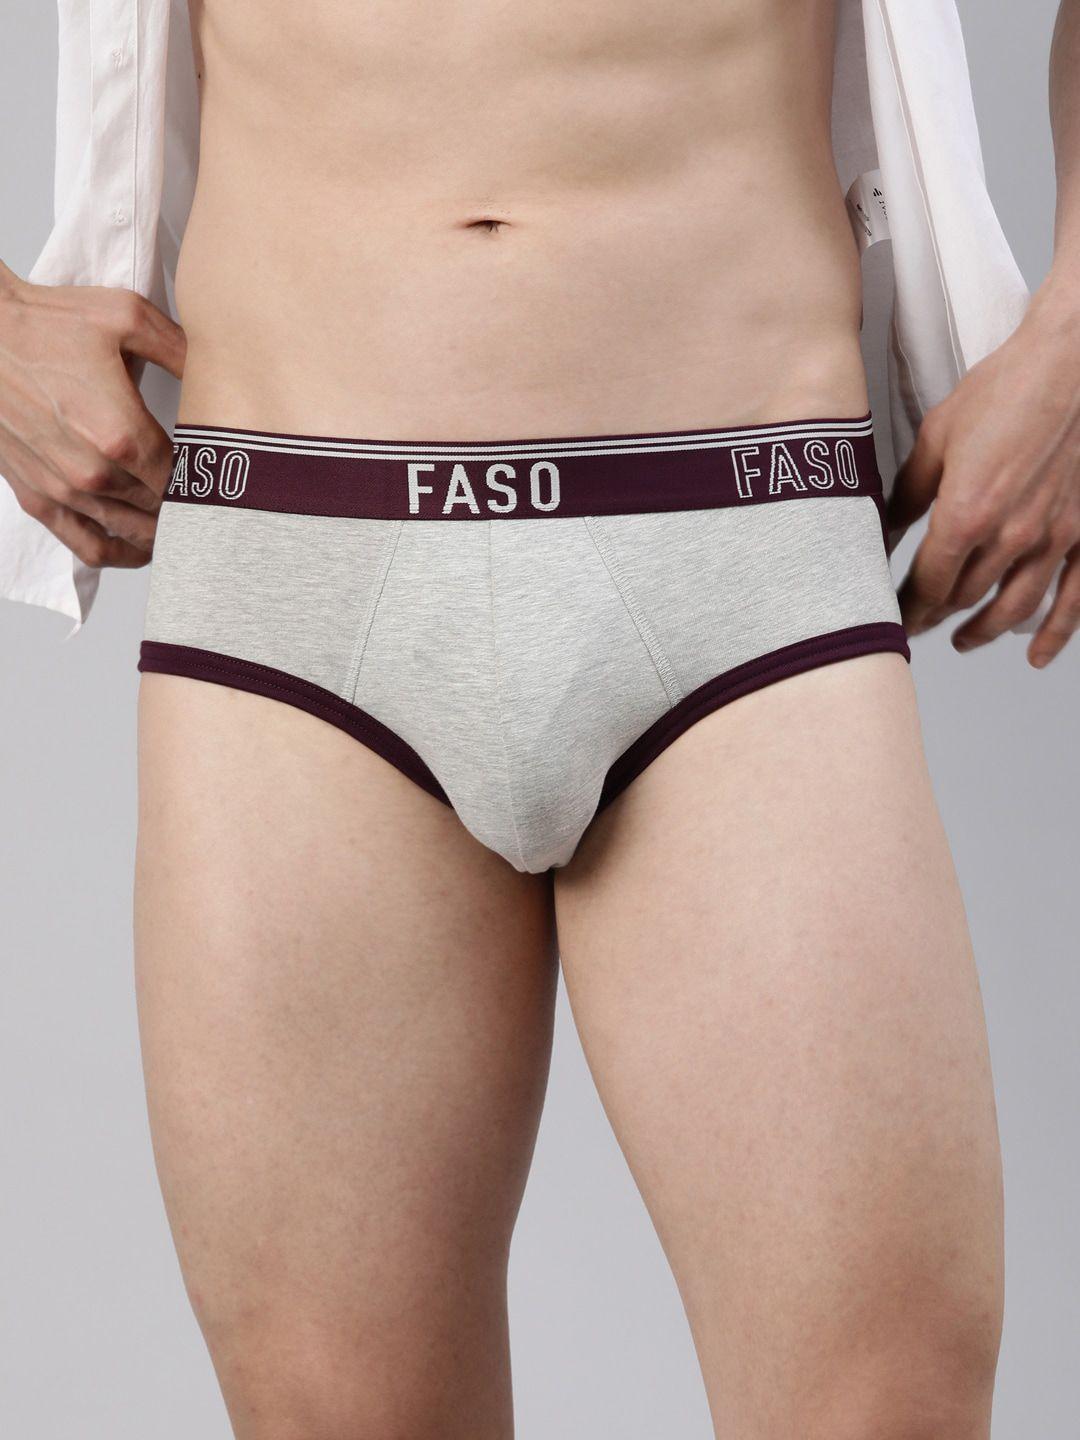 faso-colorblocked-cotton-basic-briefs-fa1505-sq-potentpur